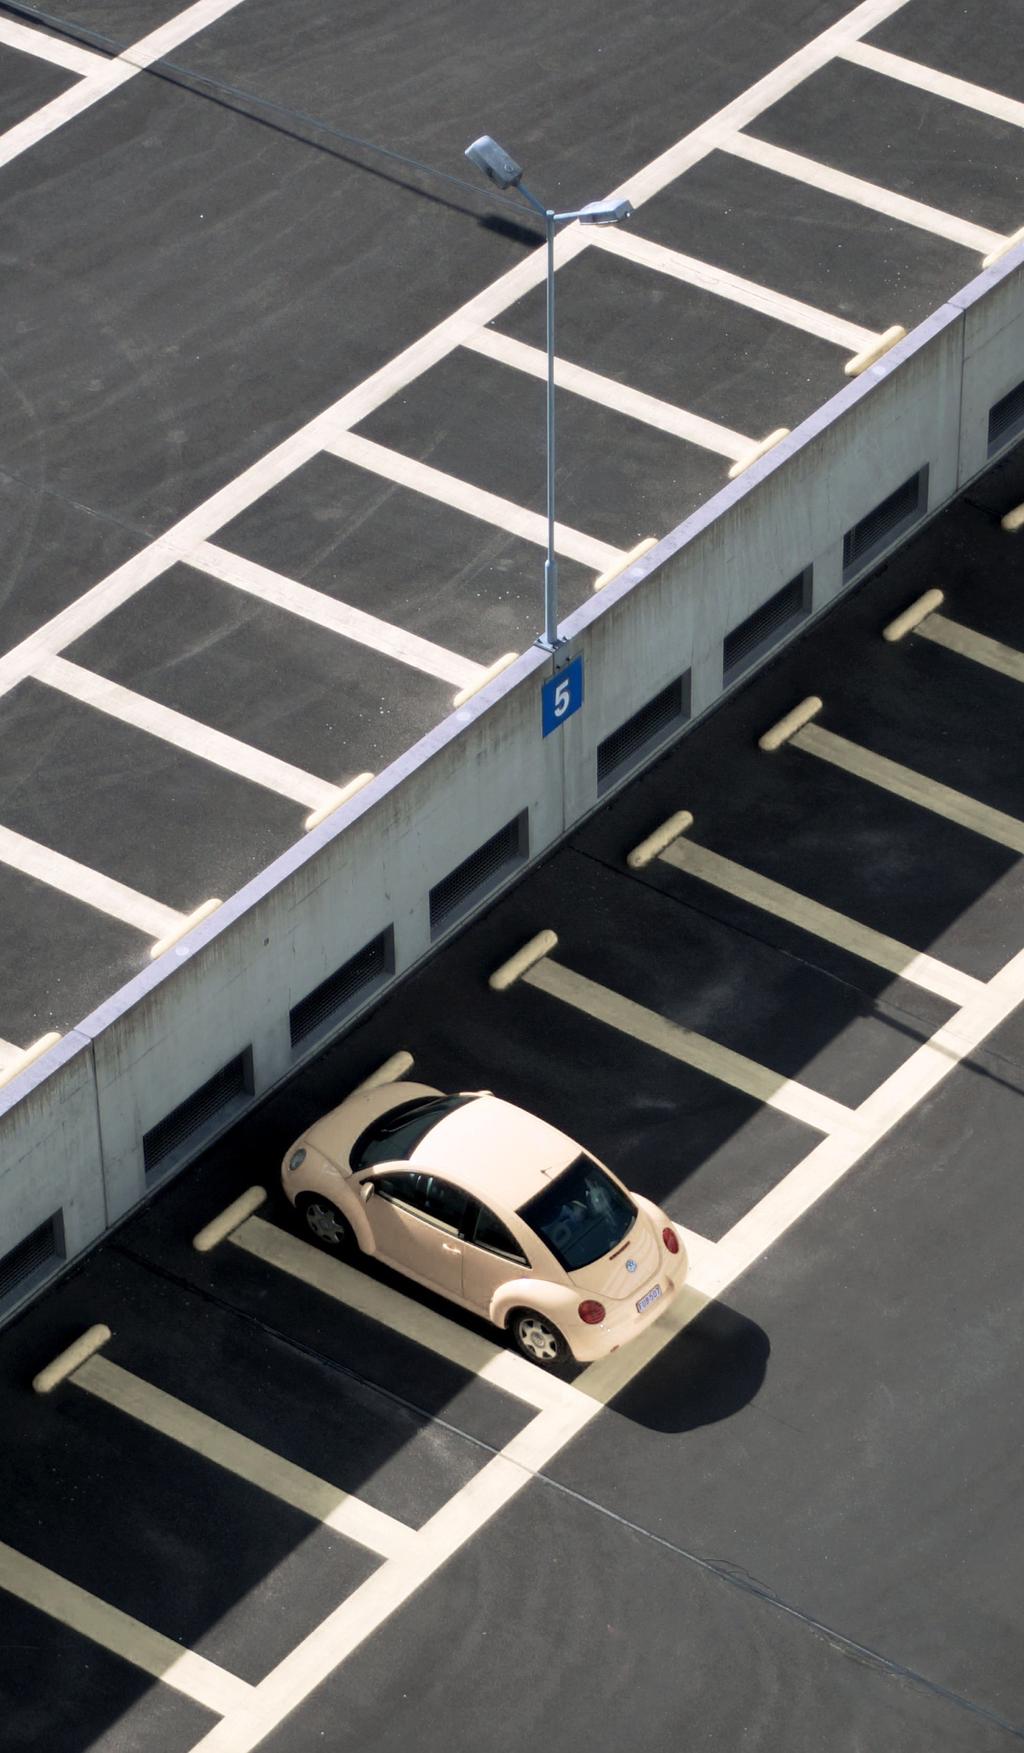 Niewykorzystany potencjał parkingu 66% * Na parkingach w w centrach biznesowych codziennie zajętych jest średnio ok. 66%* miejsc parkingowych. Pozostałe są niewykorzystane przez większość dnia!